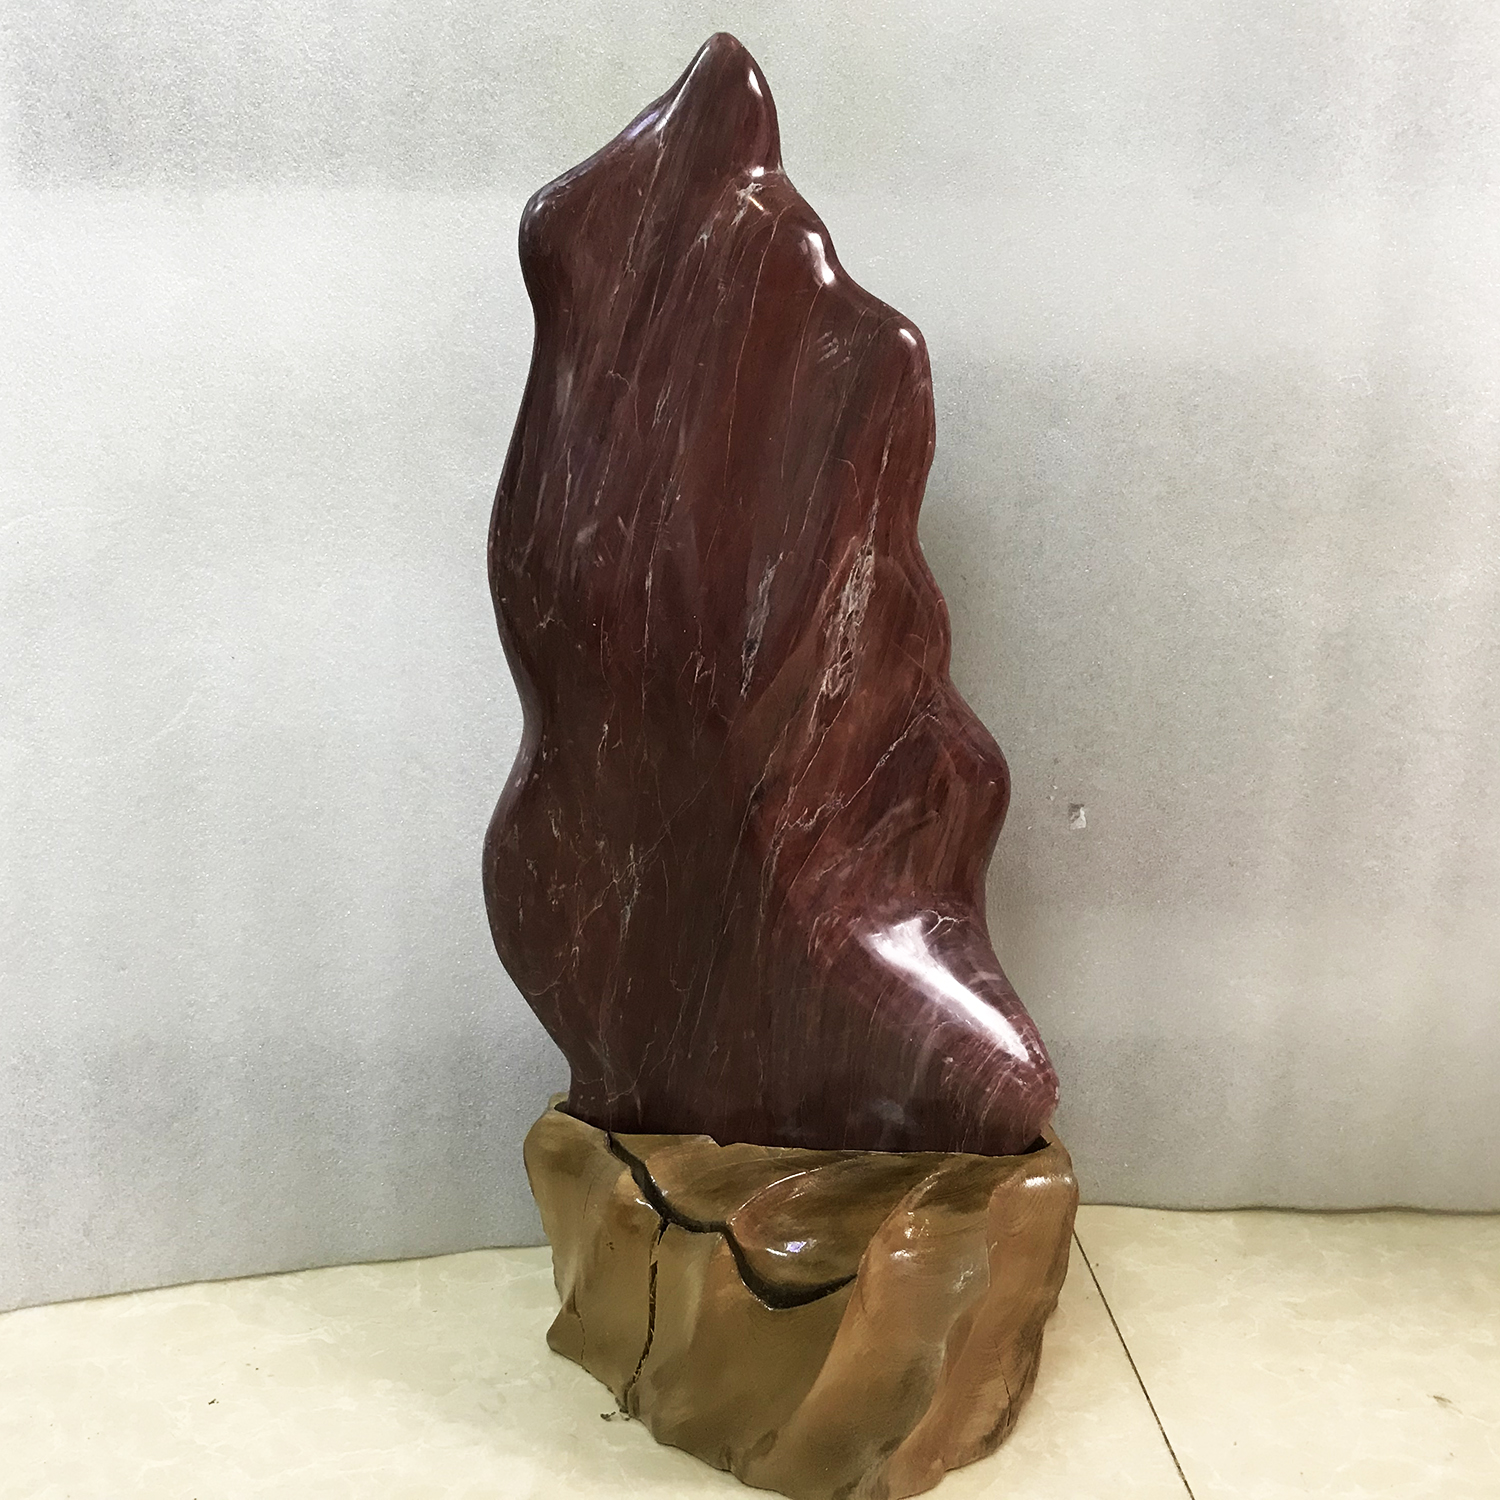 Cây đá đỏ tự nhiên cao 55 cm nặng 11 kg cho người mệnh Thổ và Hỏa DADO55x11KG